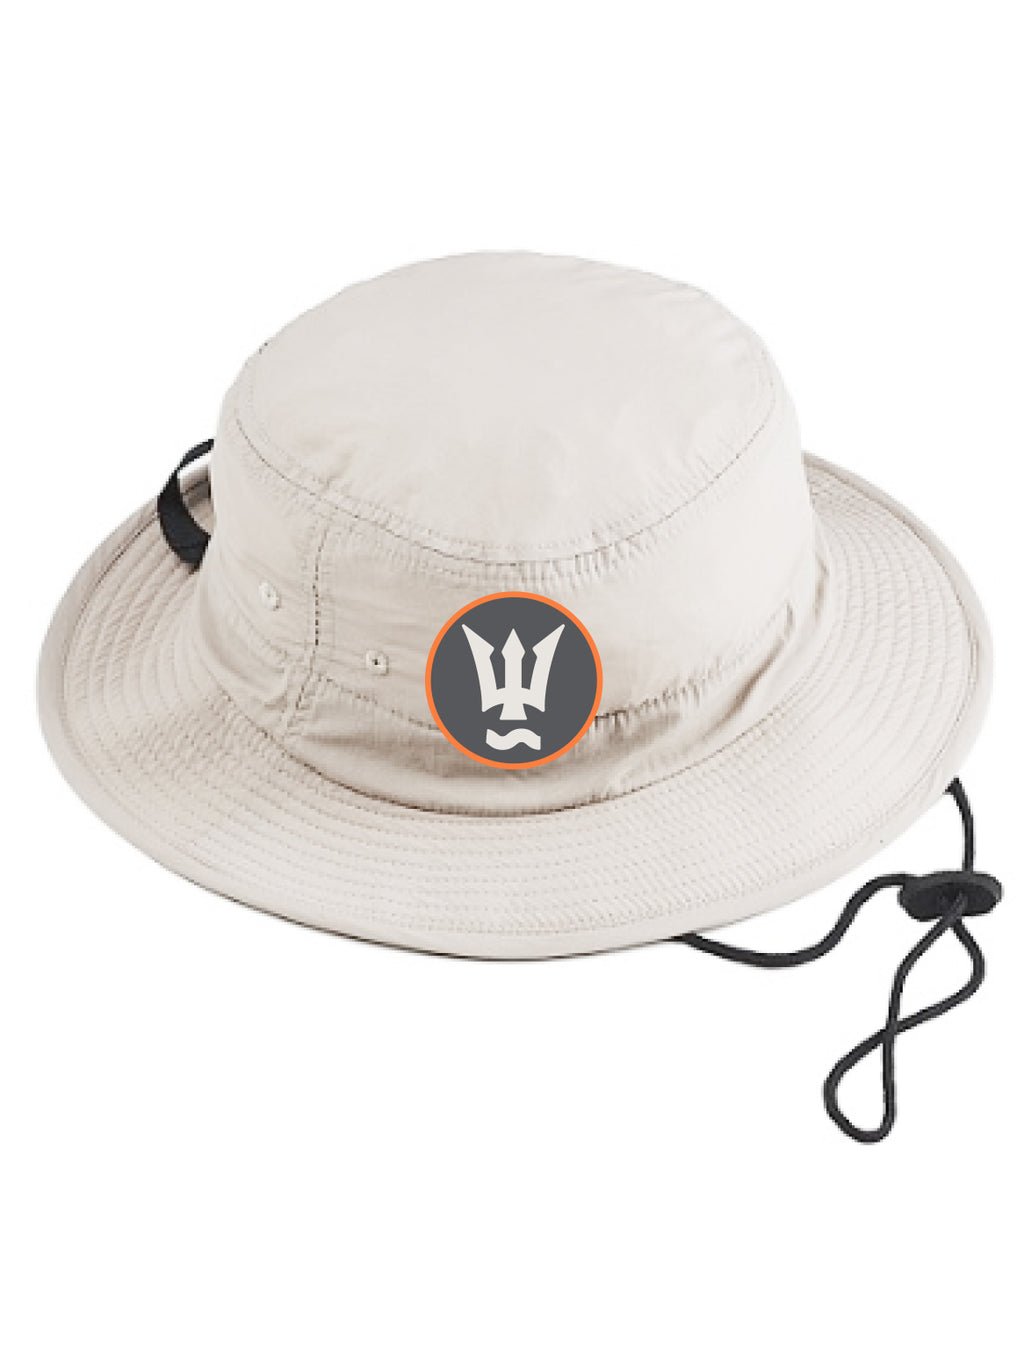 Wonderfront Bucket Hat